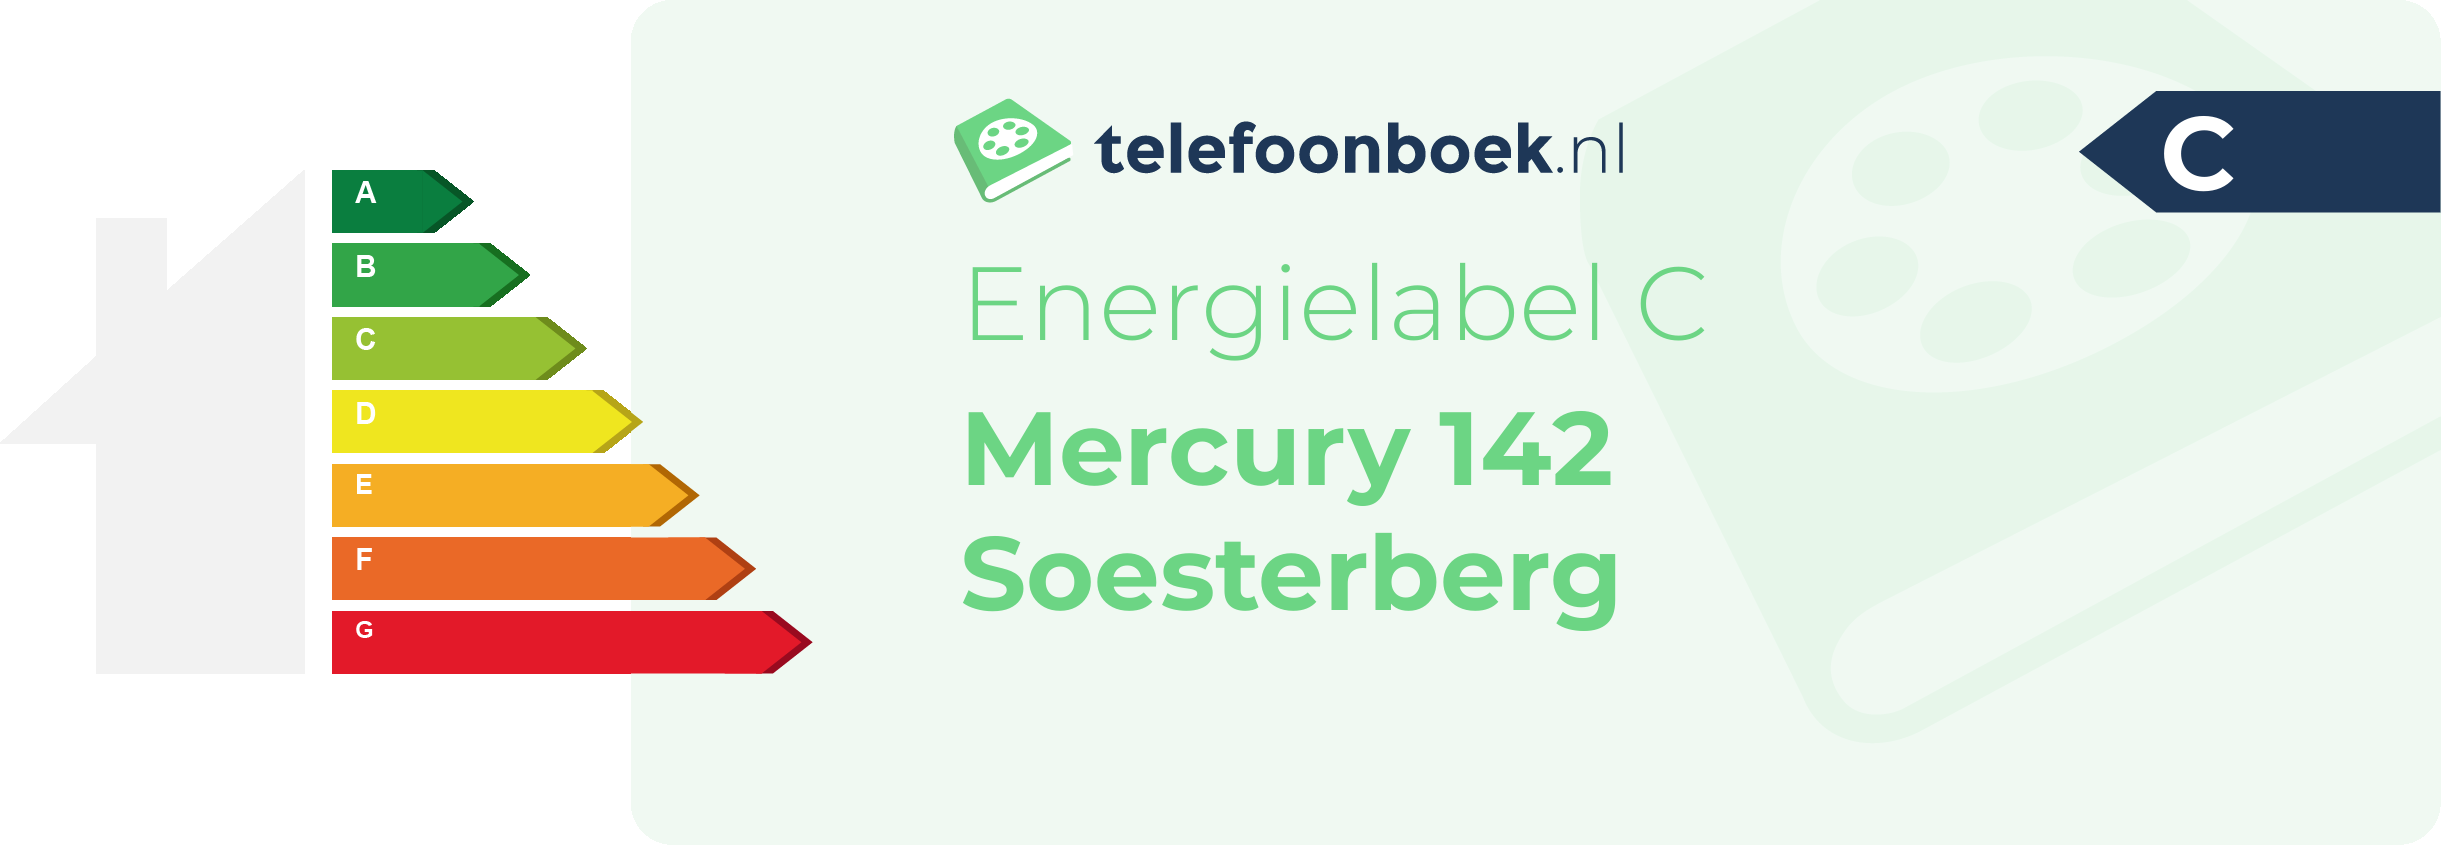 Energielabel Mercury 142 Soesterberg